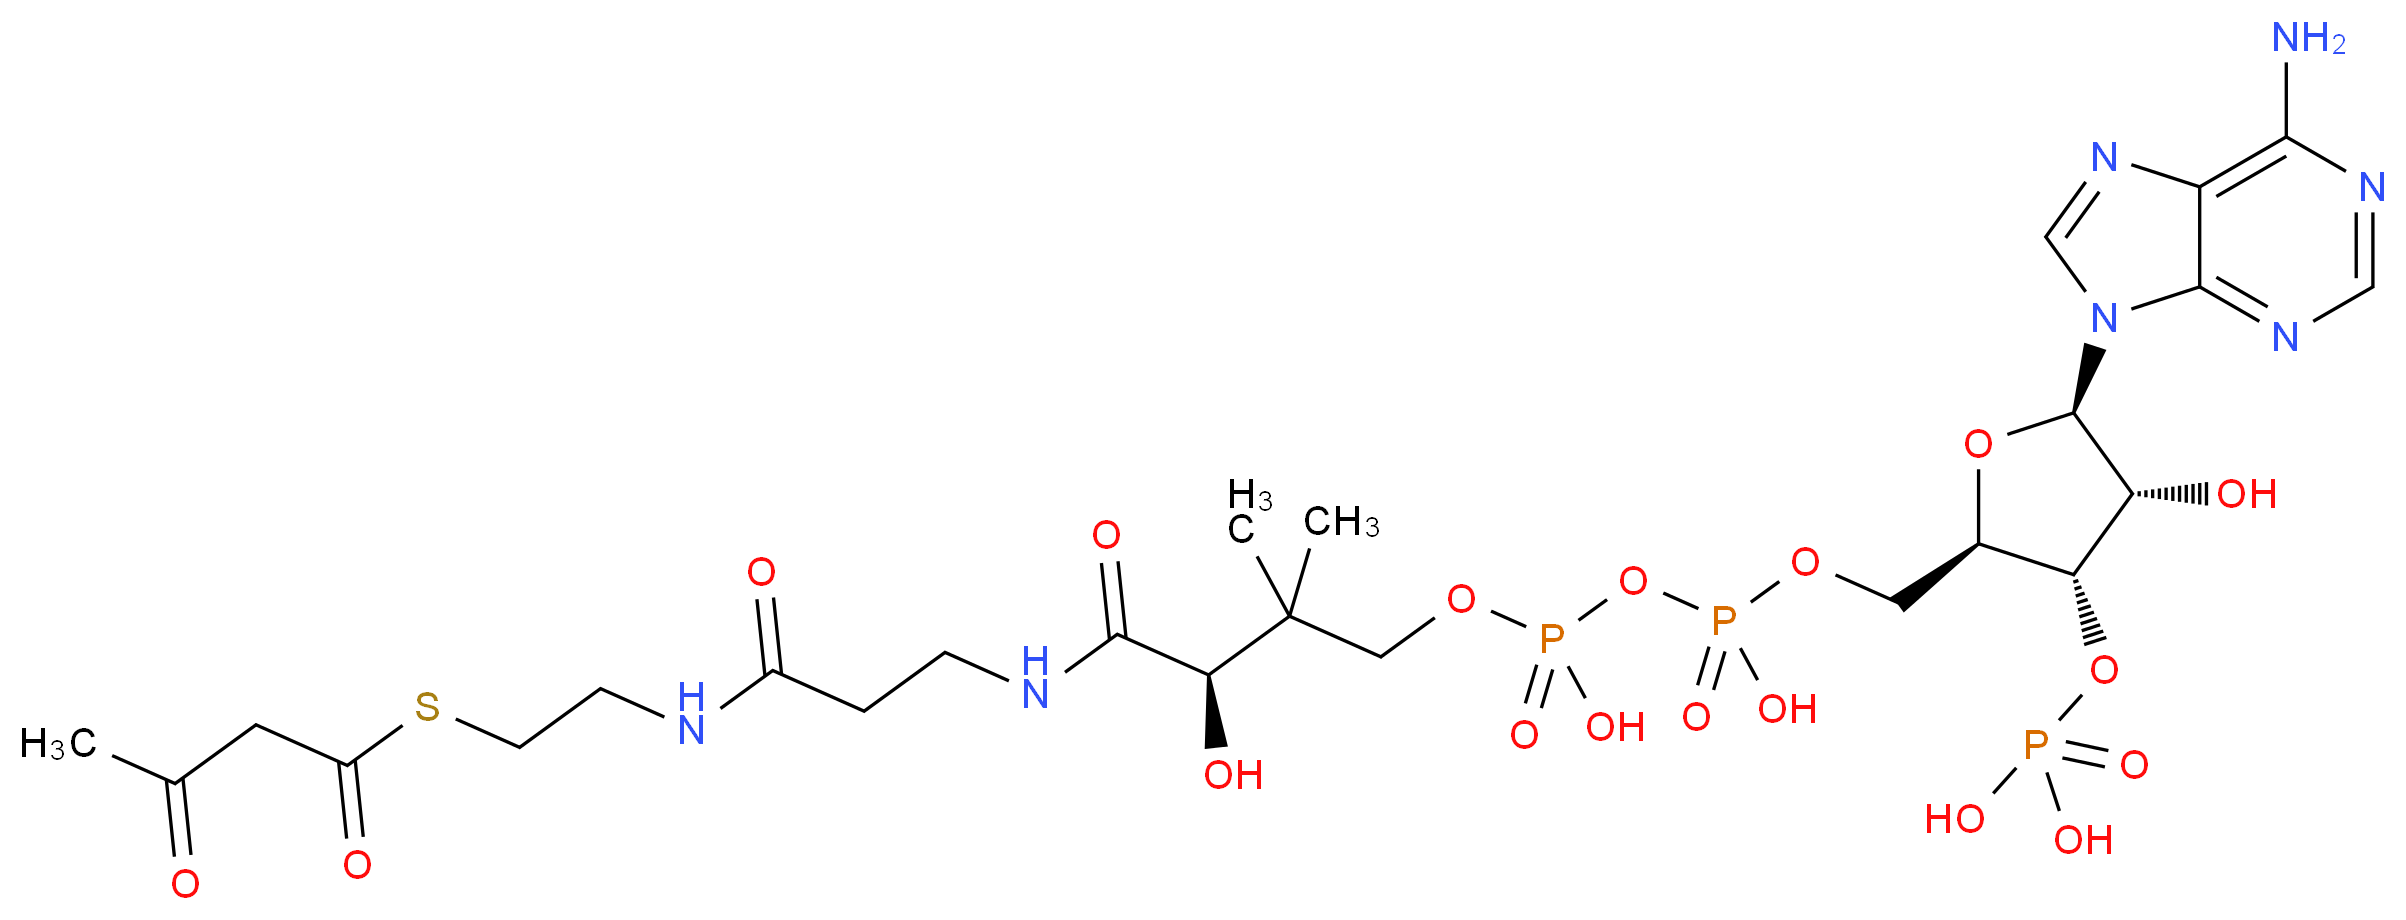 1420-36-6 molecular structure